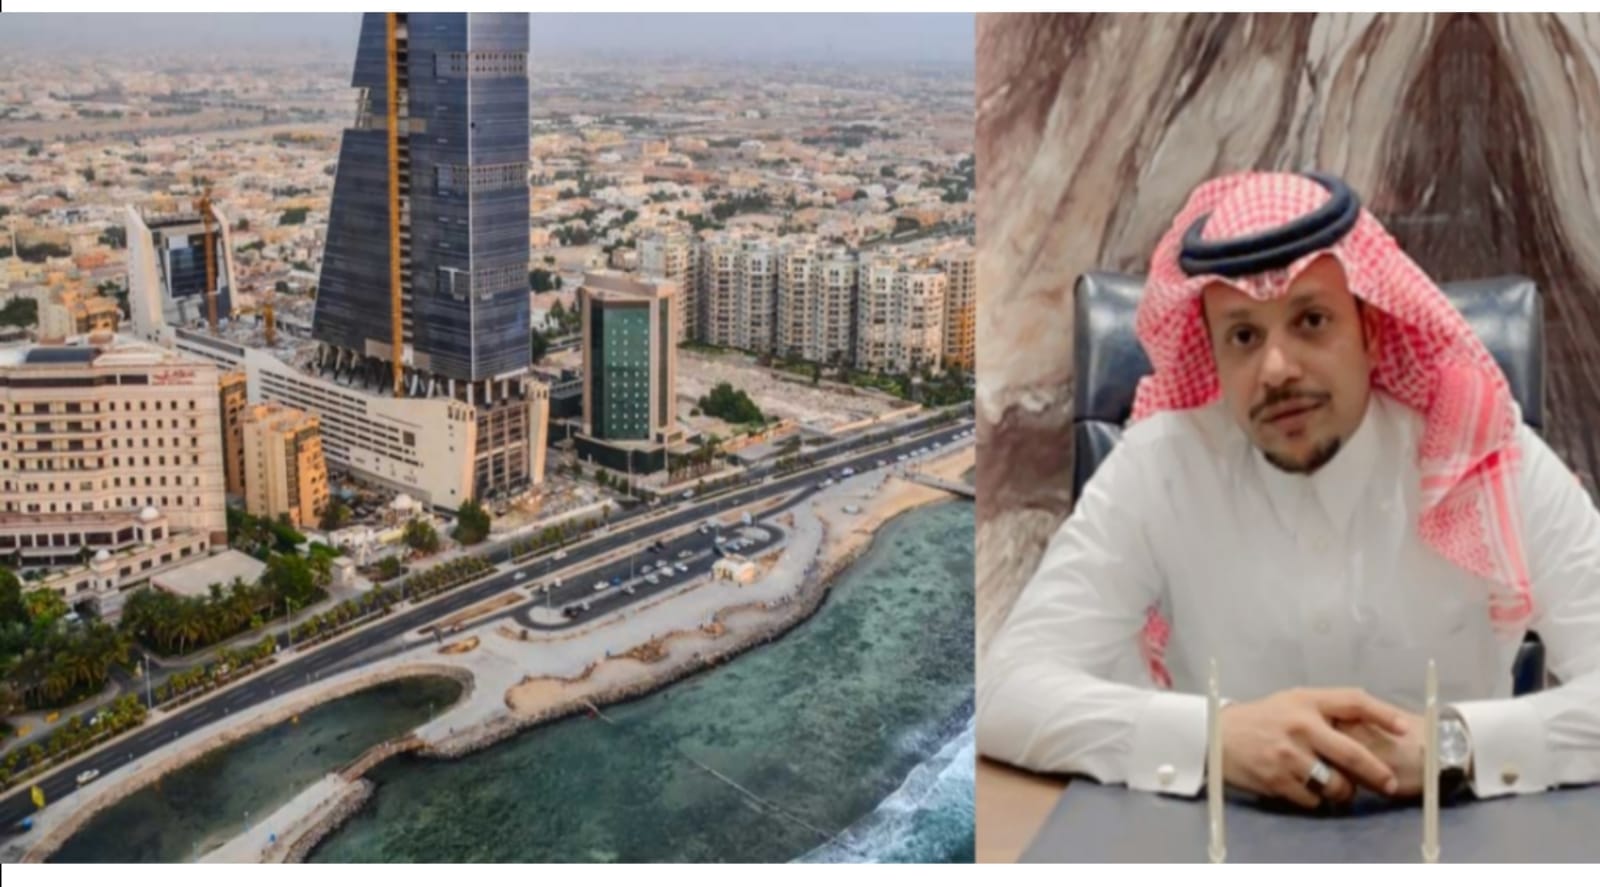 المدير التنفيذي لشركة "الإنجاز الوطني" يكشف عن مستقبل القطاع العقاري في جدة .. وتوقعاته بشأن الأسعار